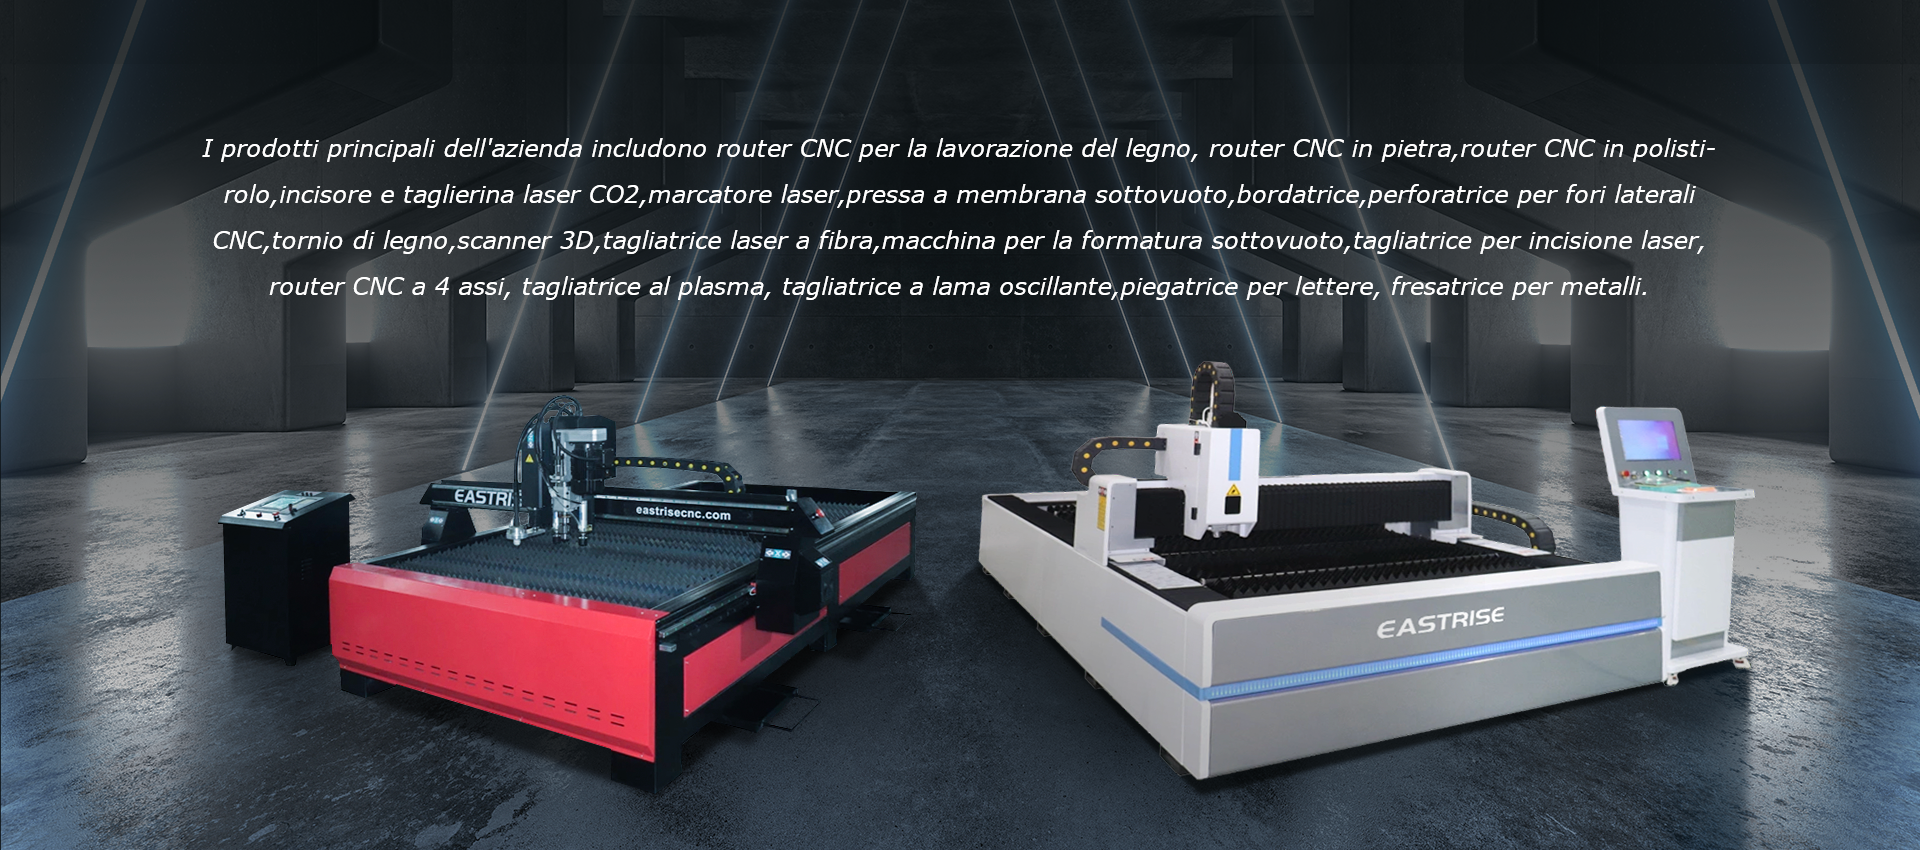 Router CNC, macchina per incisione laser, macchina per taglio al plasma  Produttore e fornitore - Eastrise